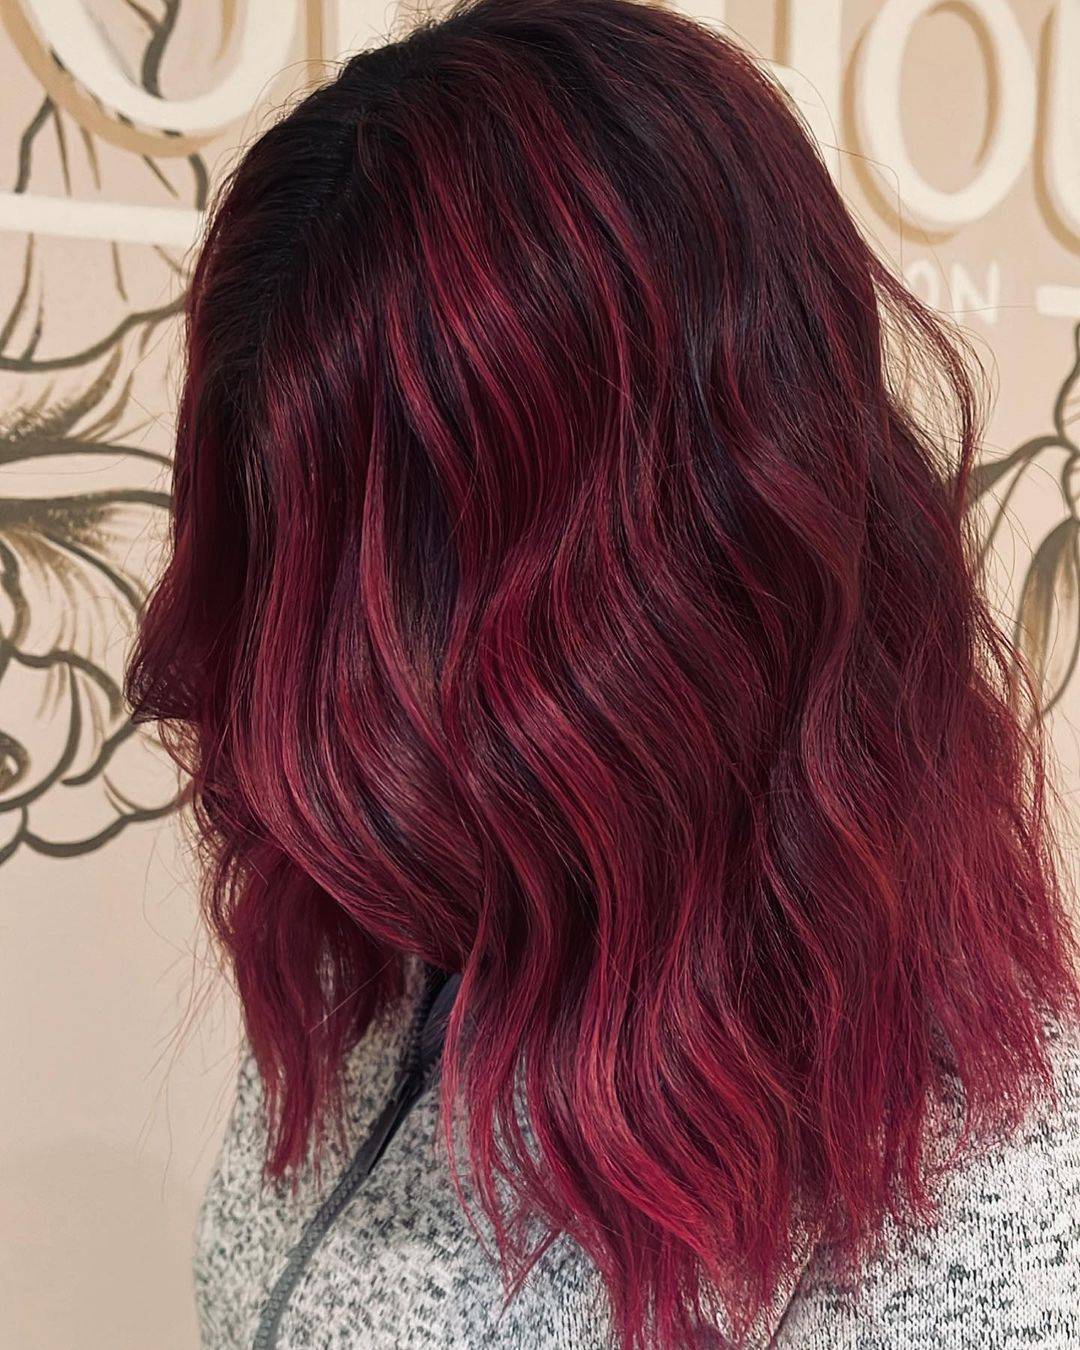 Burgundy hair color 413 burgundy hair color | burgundy hair color for women | burgundy hair color highlights Burgundy Hair Color